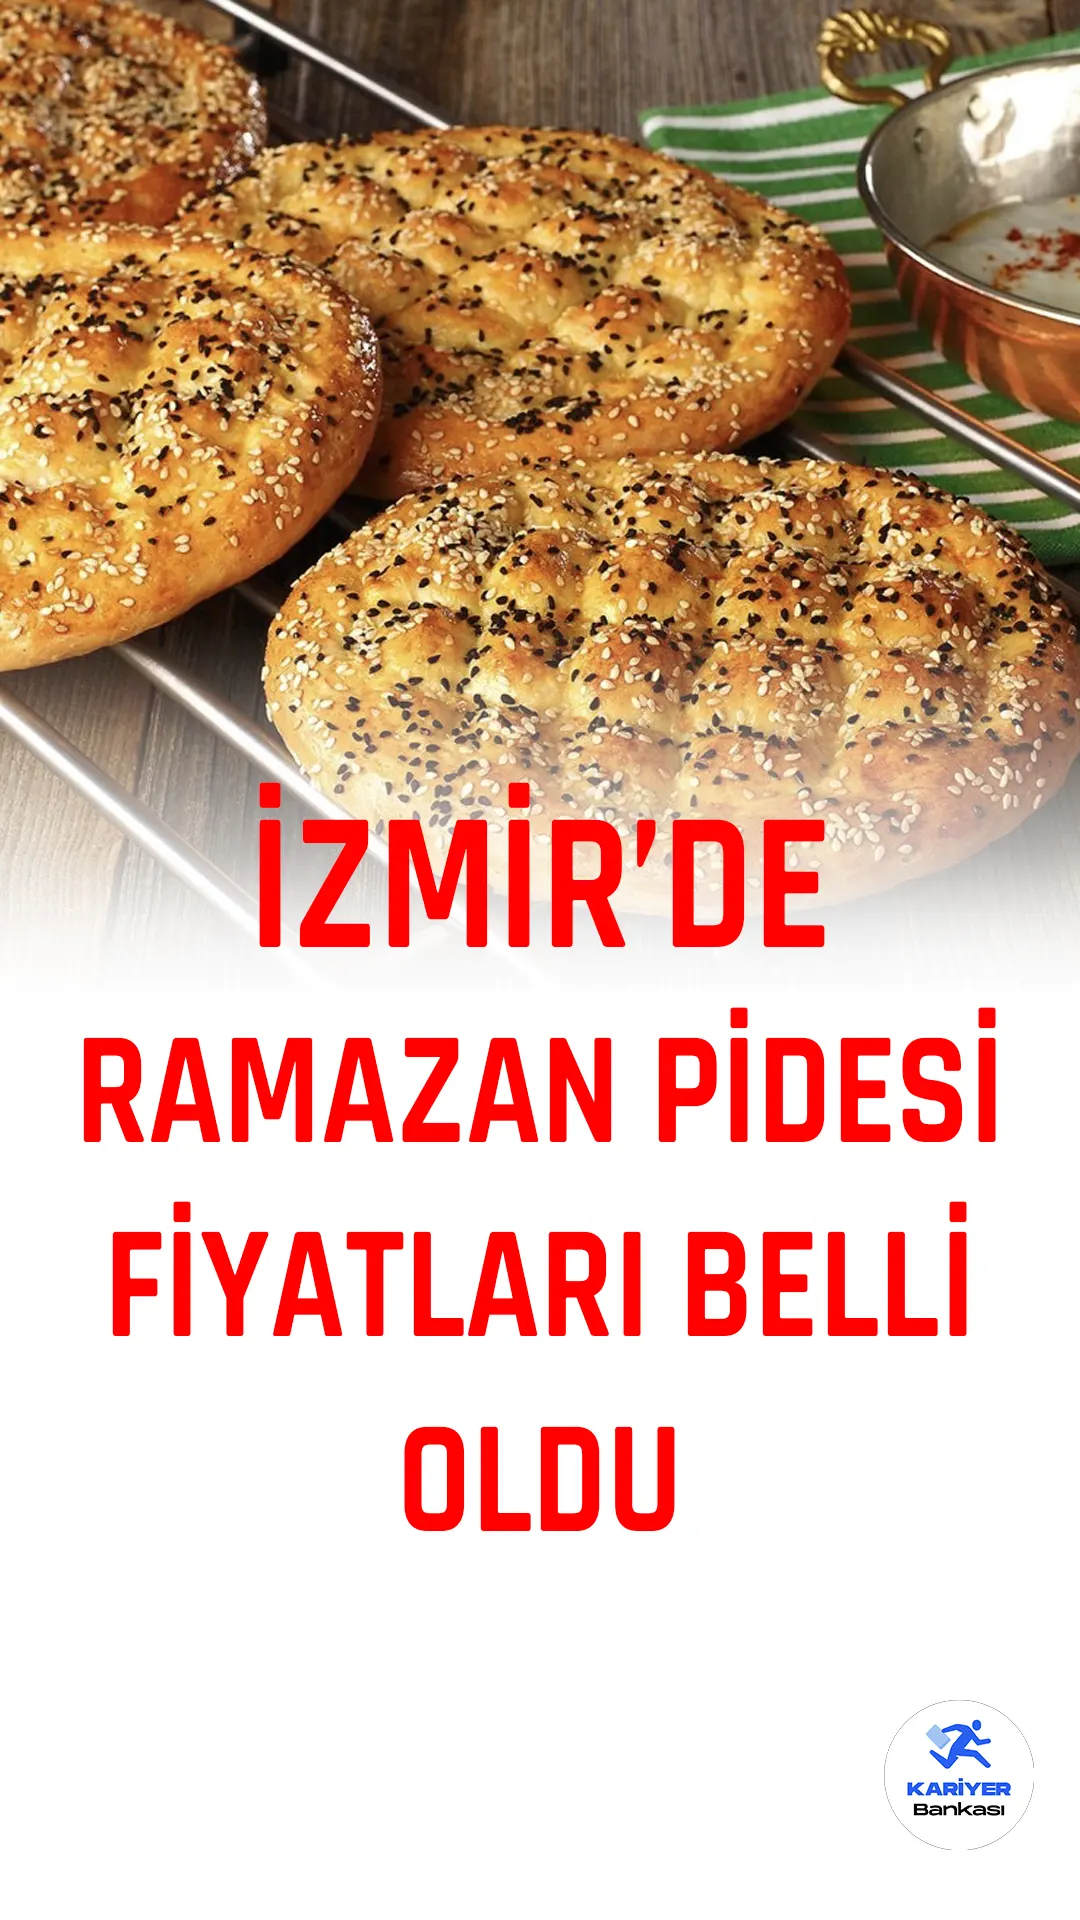 İzmir'de Ramazan ayı öncesinde Ramazan pidesinin fiyatı belirlendi. İzmir Ticaret Odası tarafından yapılan açıklamada, geçen yıl 350 gramı 6 liradan satılan Ramazan pidesinin bu yıl 320 gramı 10 liradan satışa sunulacağı bildirildi.